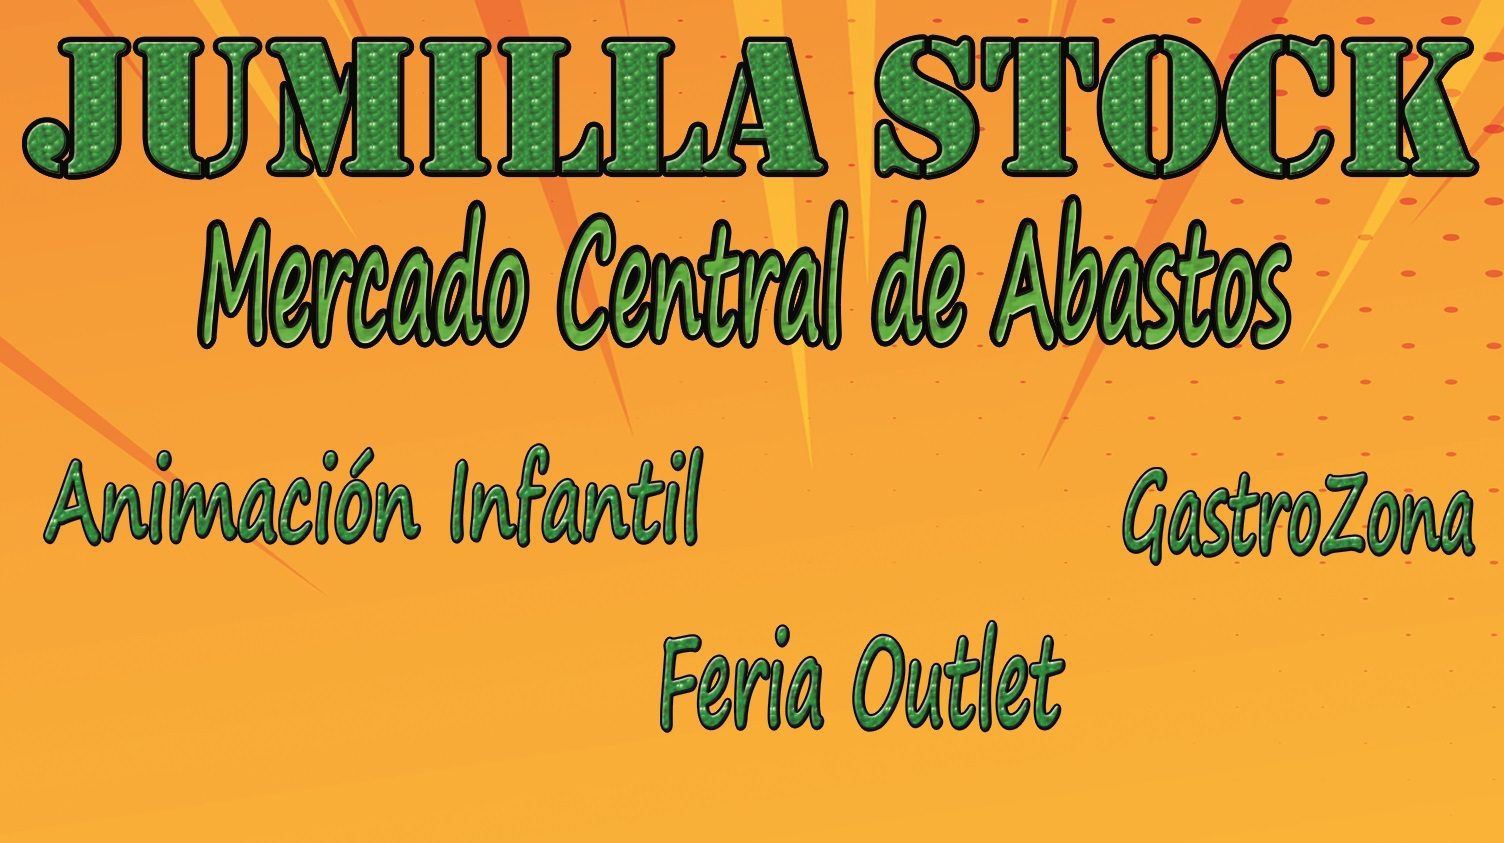 La Feria Outlet Jumilla Stock abre sus puertas este sábado a las 12:00 horas